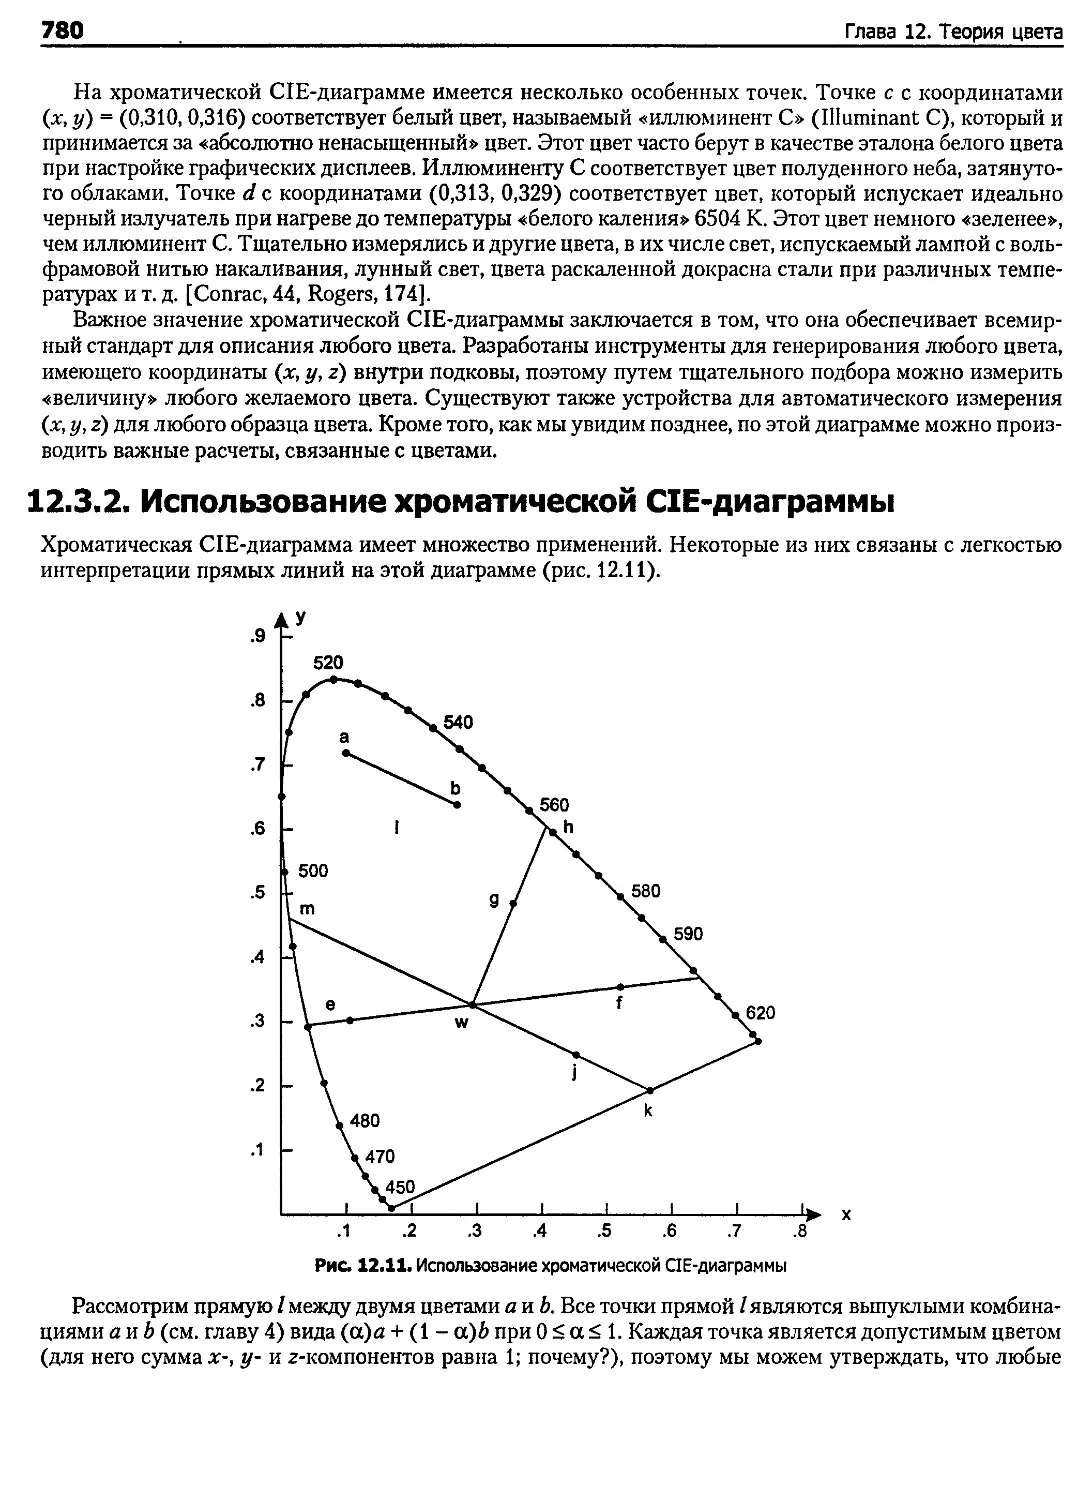 12.3.2. Использование хроматической CIE-диаграммы